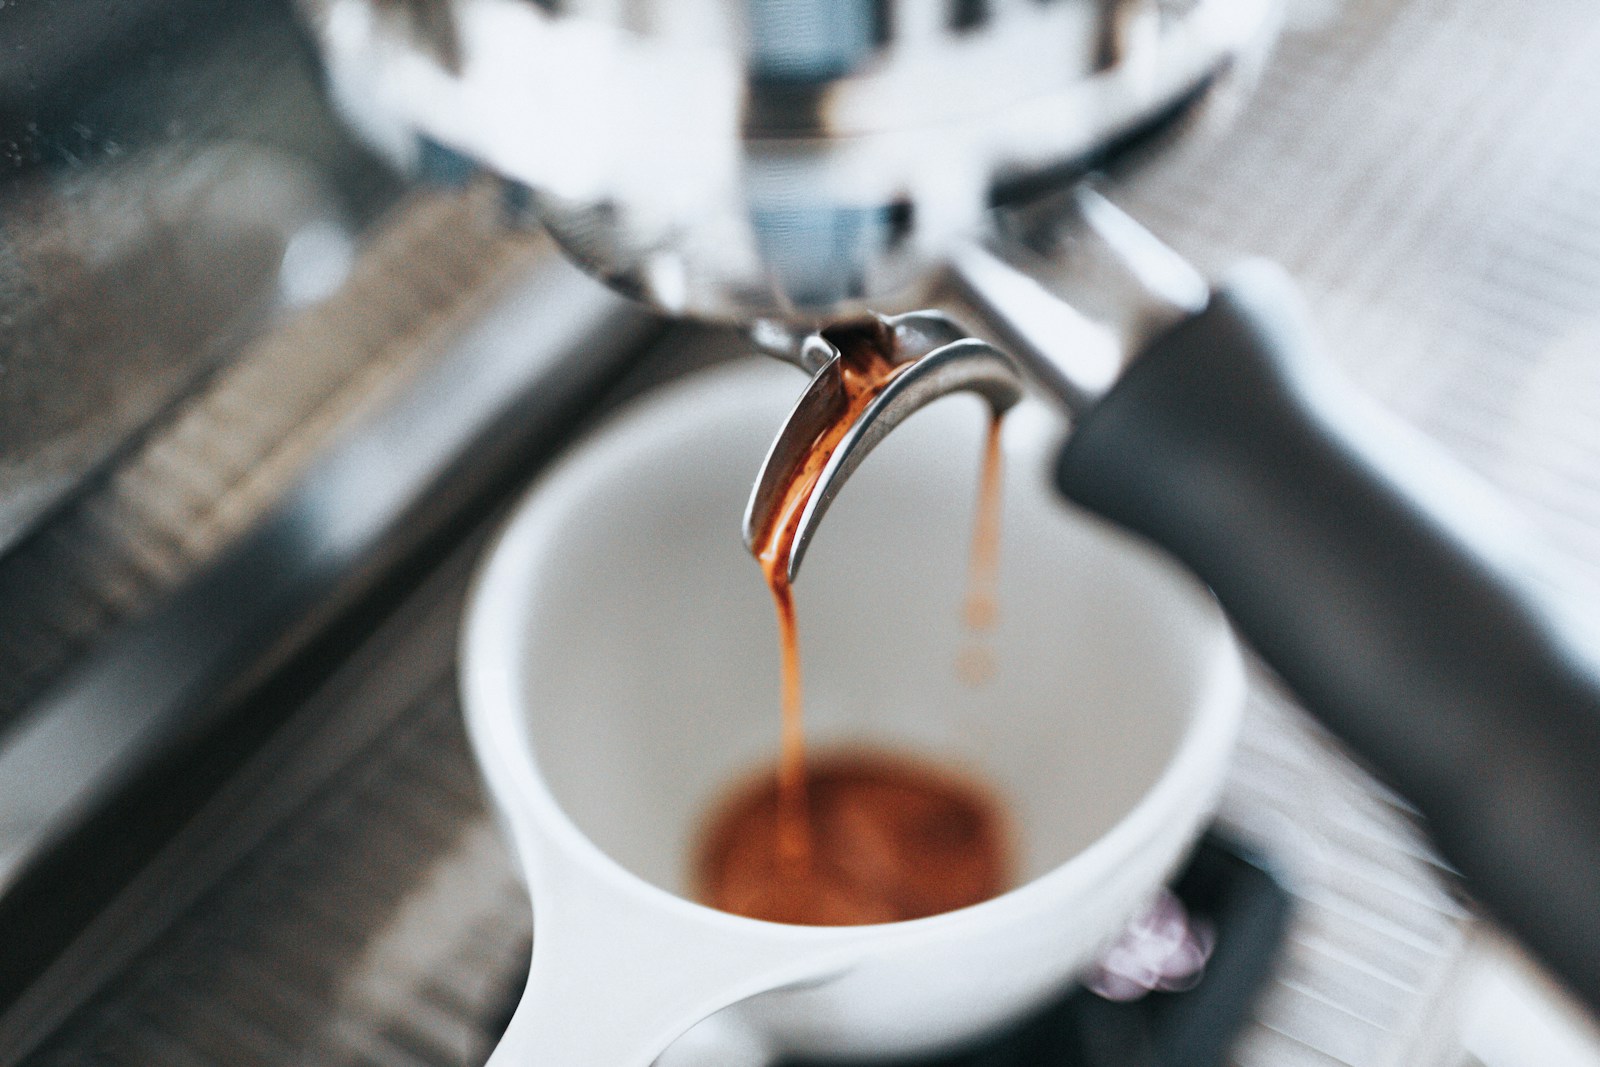 Koffie op het Werk: De Sleutel tot Productiviteit en Werkplezier